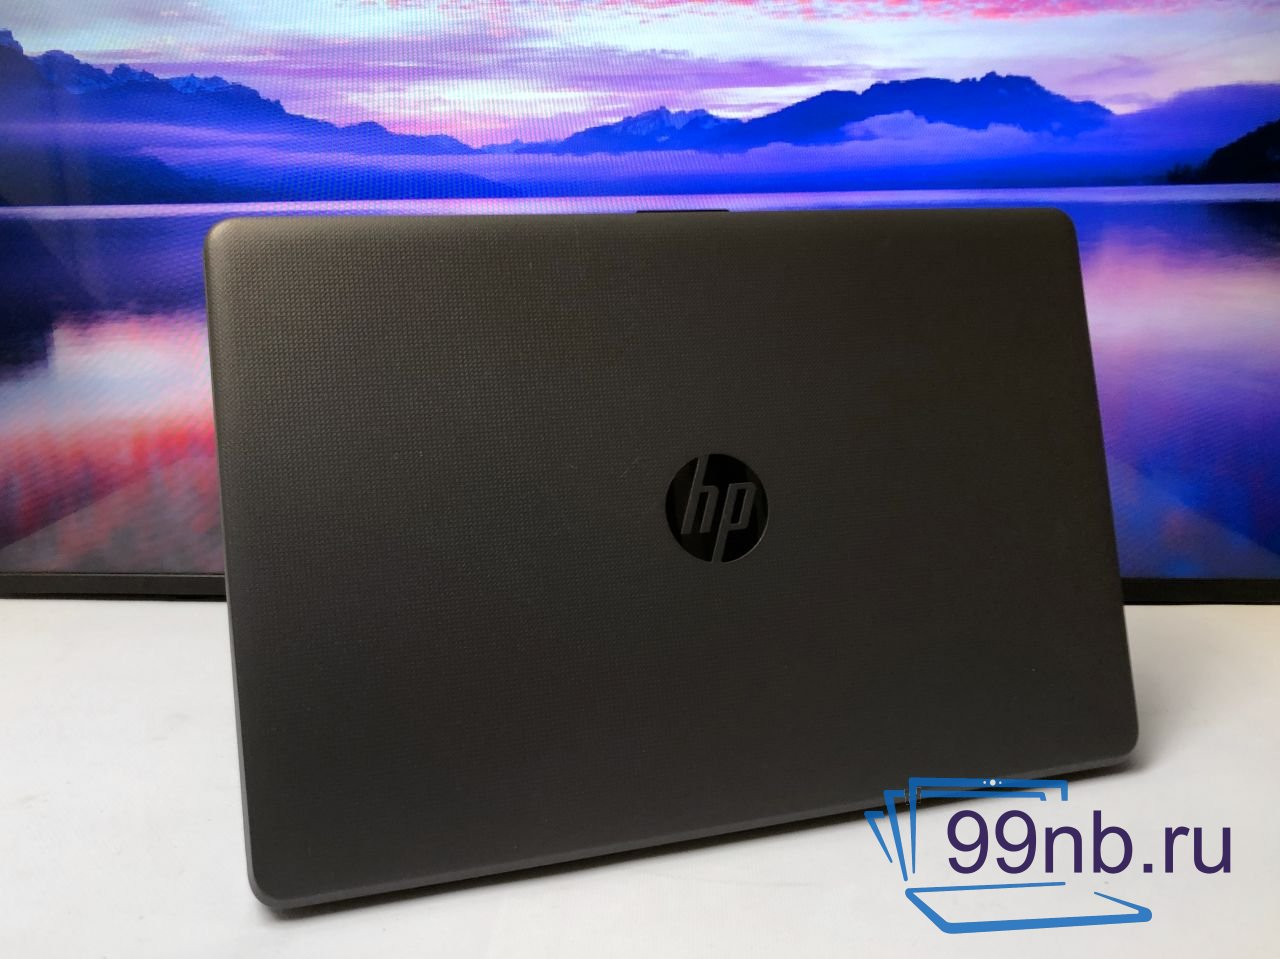  Ноутбук HP для работы FULL HD